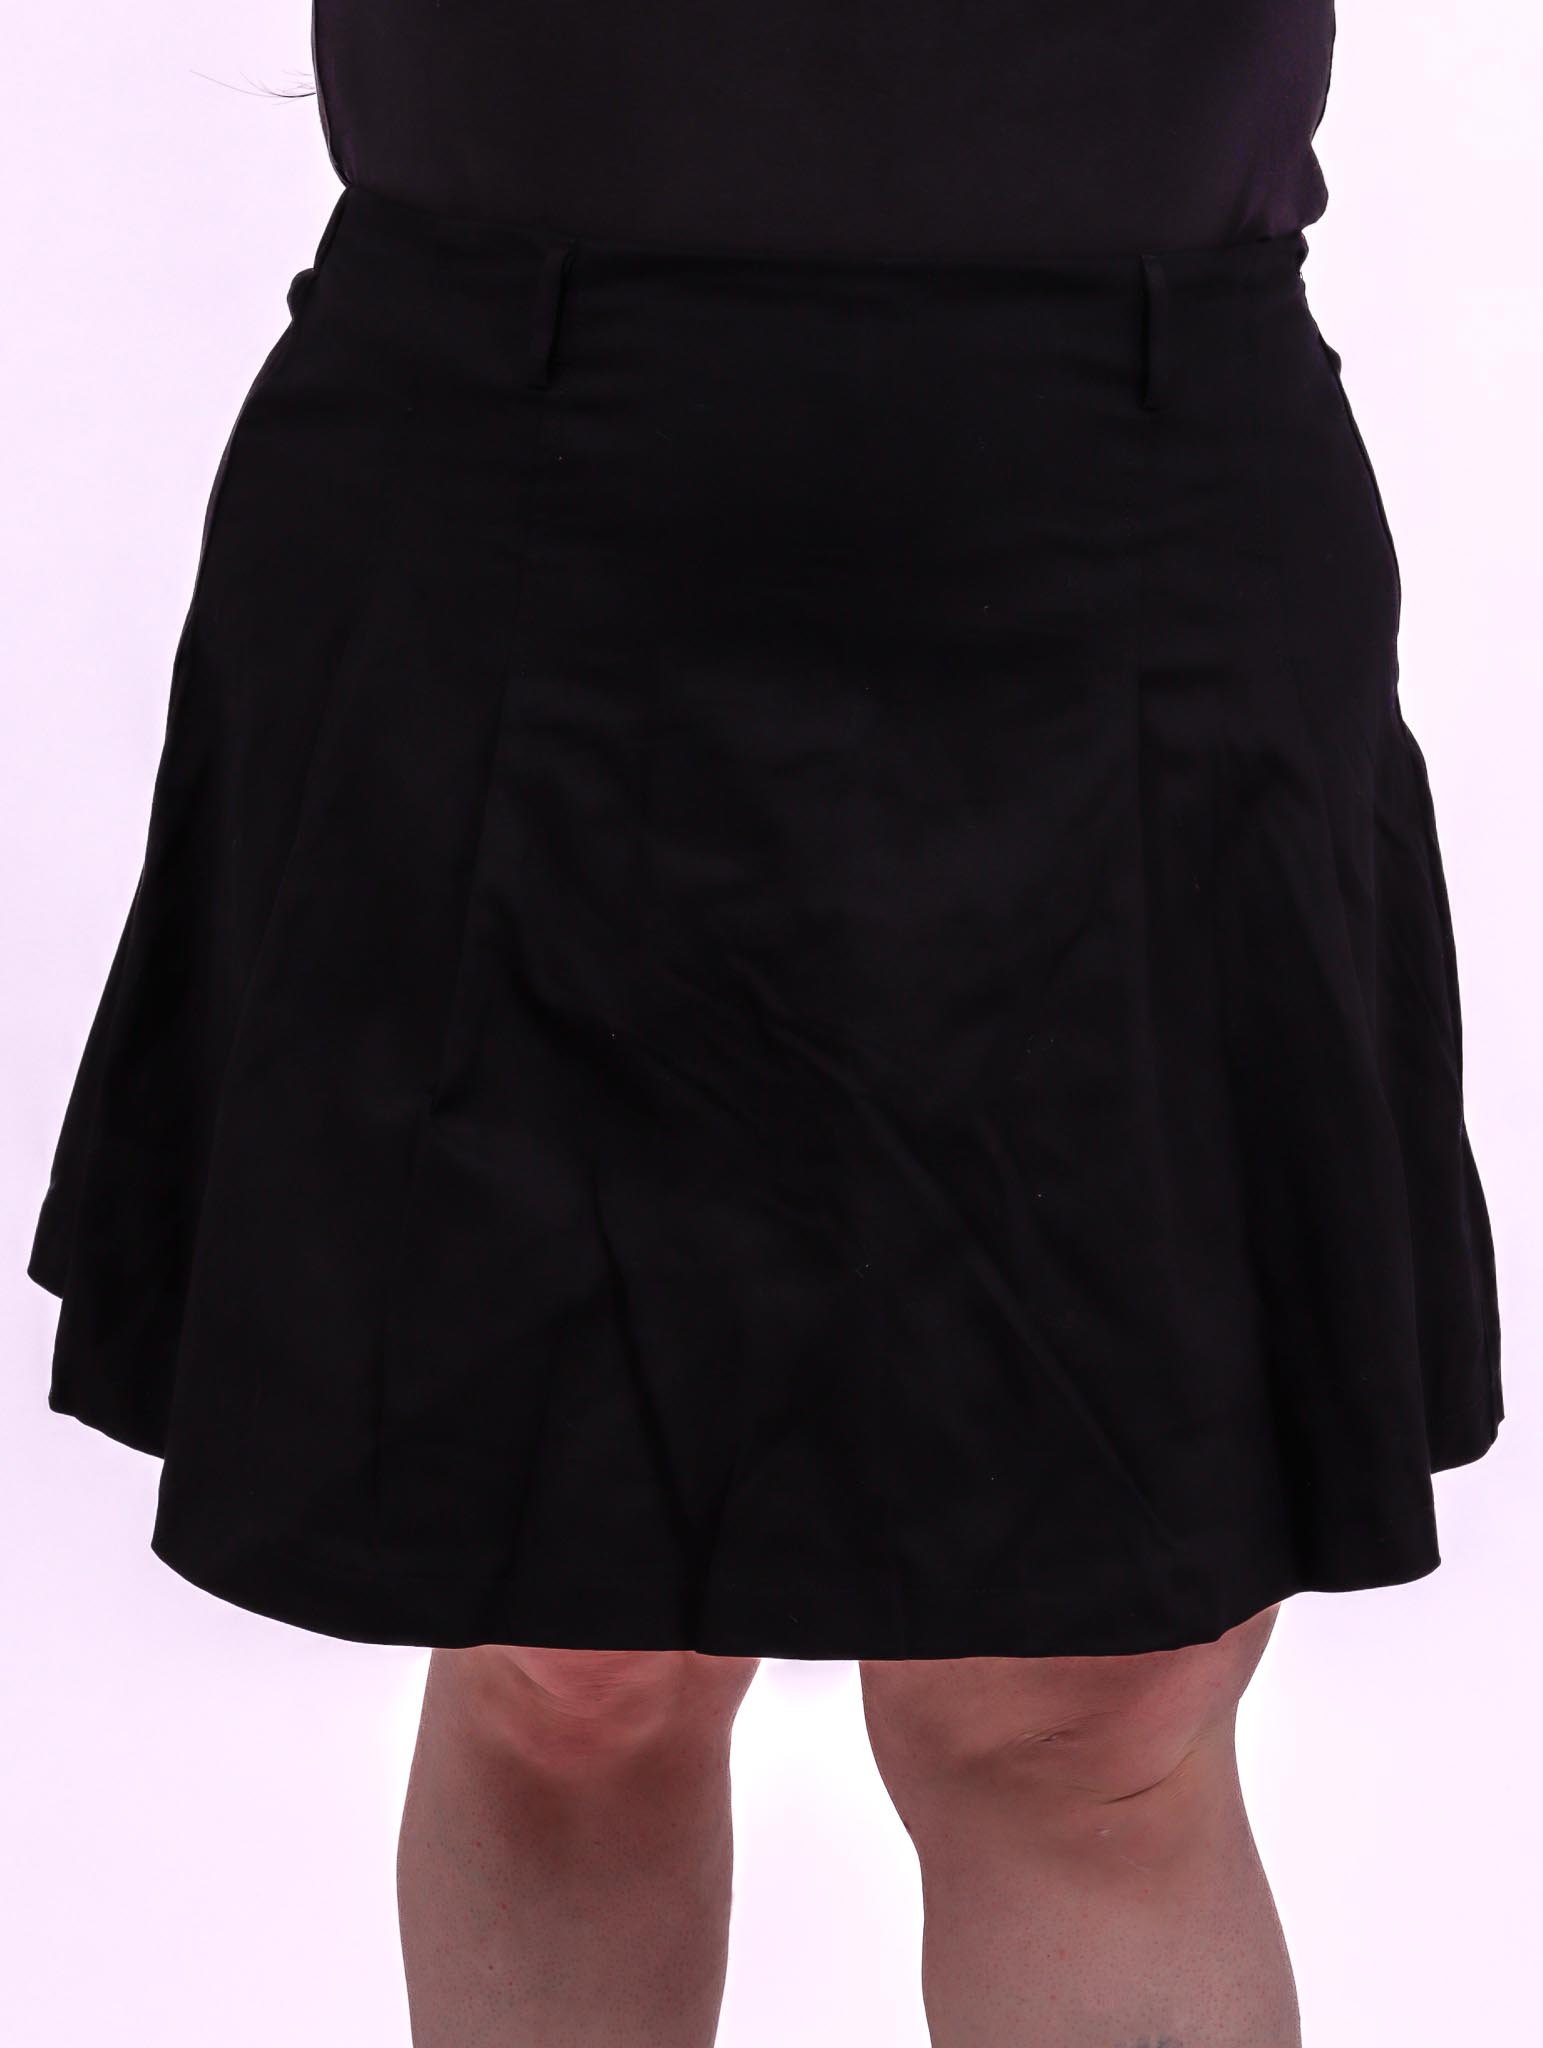 Minijupe M - Petite robe noire